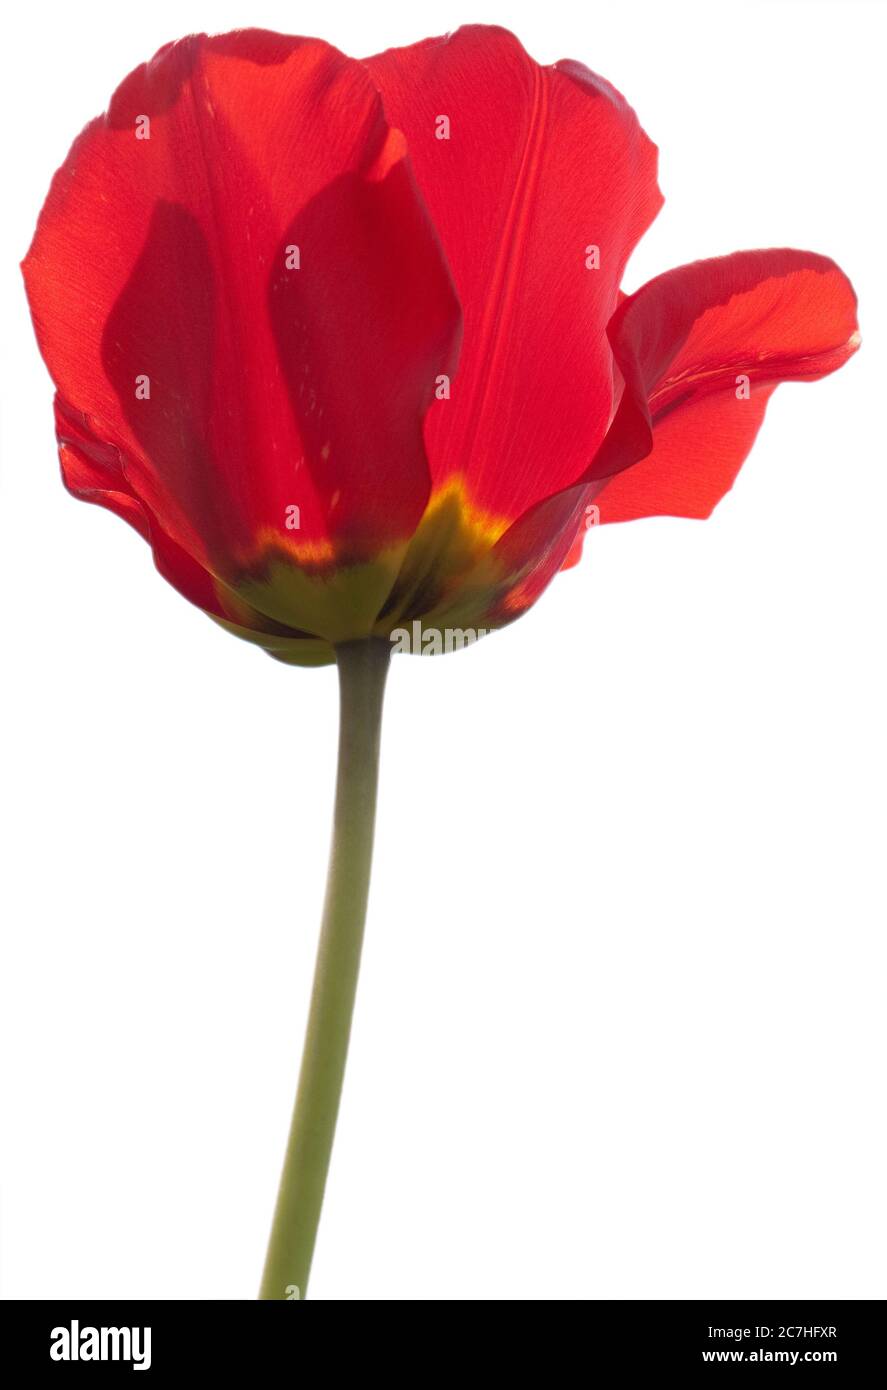 Una flor común de amapola, amapola de maíz, rosa de maíz, amapola roja o amapola de flandes aisladas sobre blanco Foto de stock